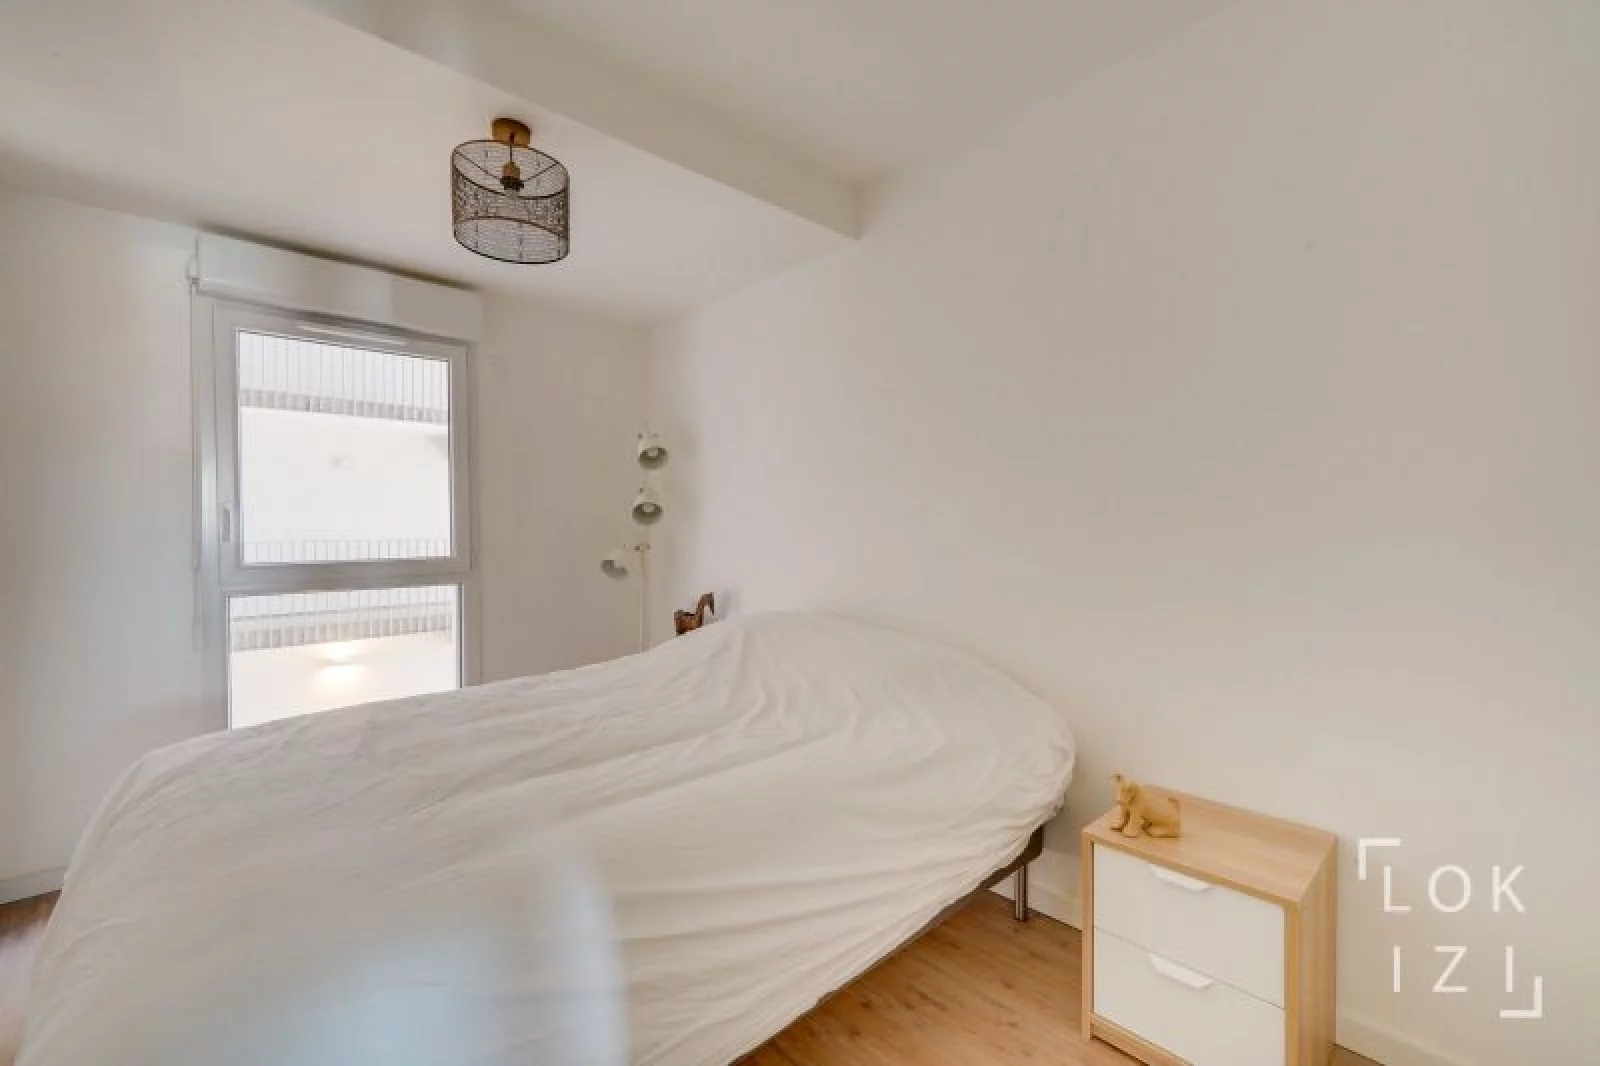 Location appartement duplex meublé 4 pièces 92m² (Bordeaux - Bassins à flot)